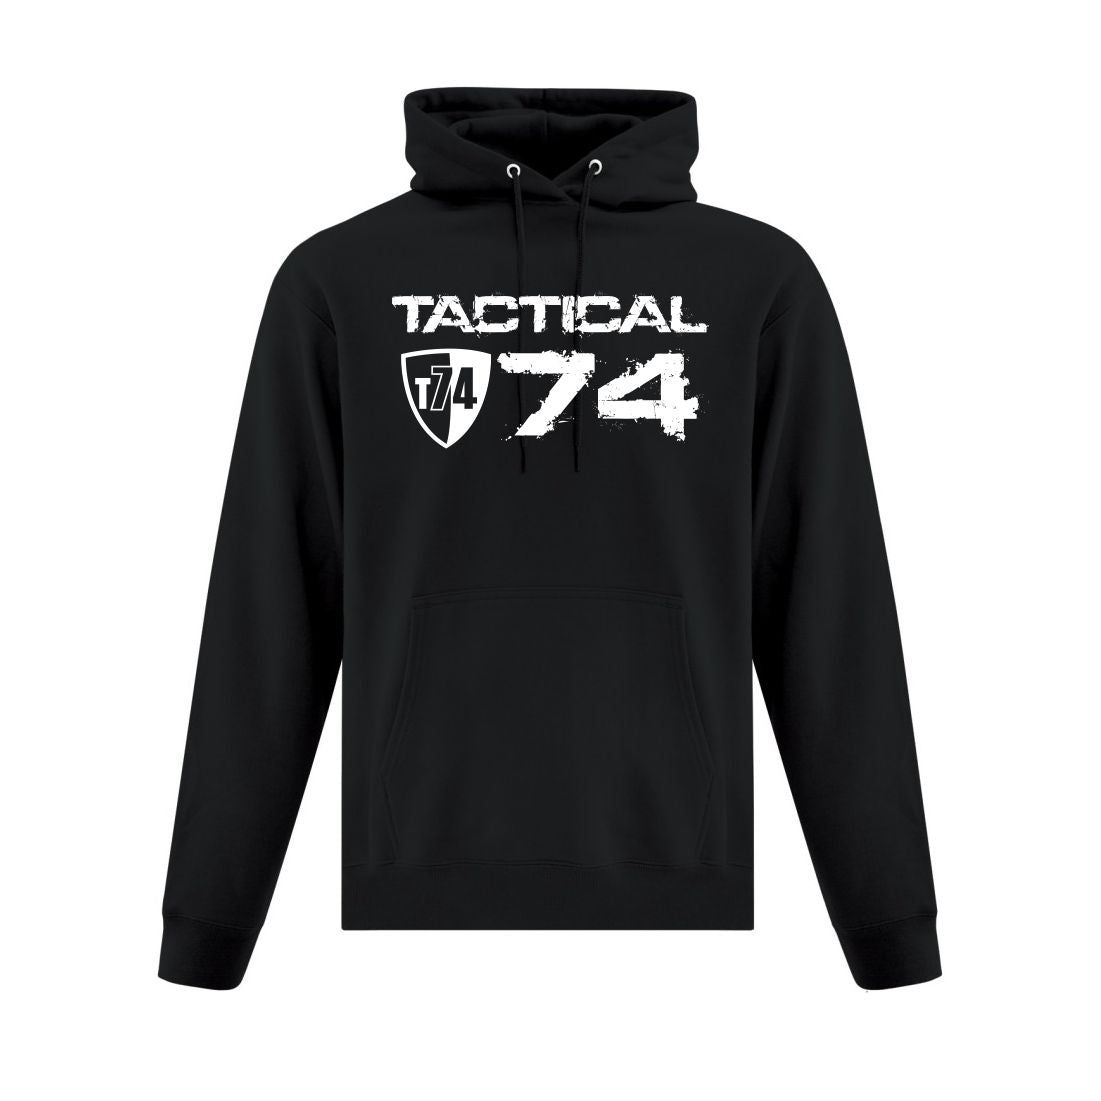 Tactical 74 Hoodie